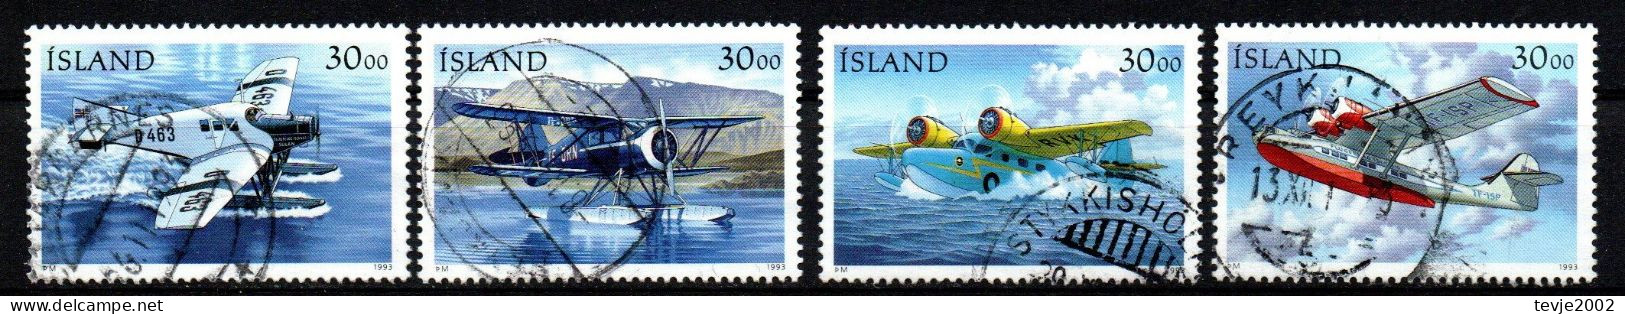 Island 1993 - Mi.Nr. 791 - 794 - Gestempelt Used - Flugzeuge Airplanes - Used Stamps